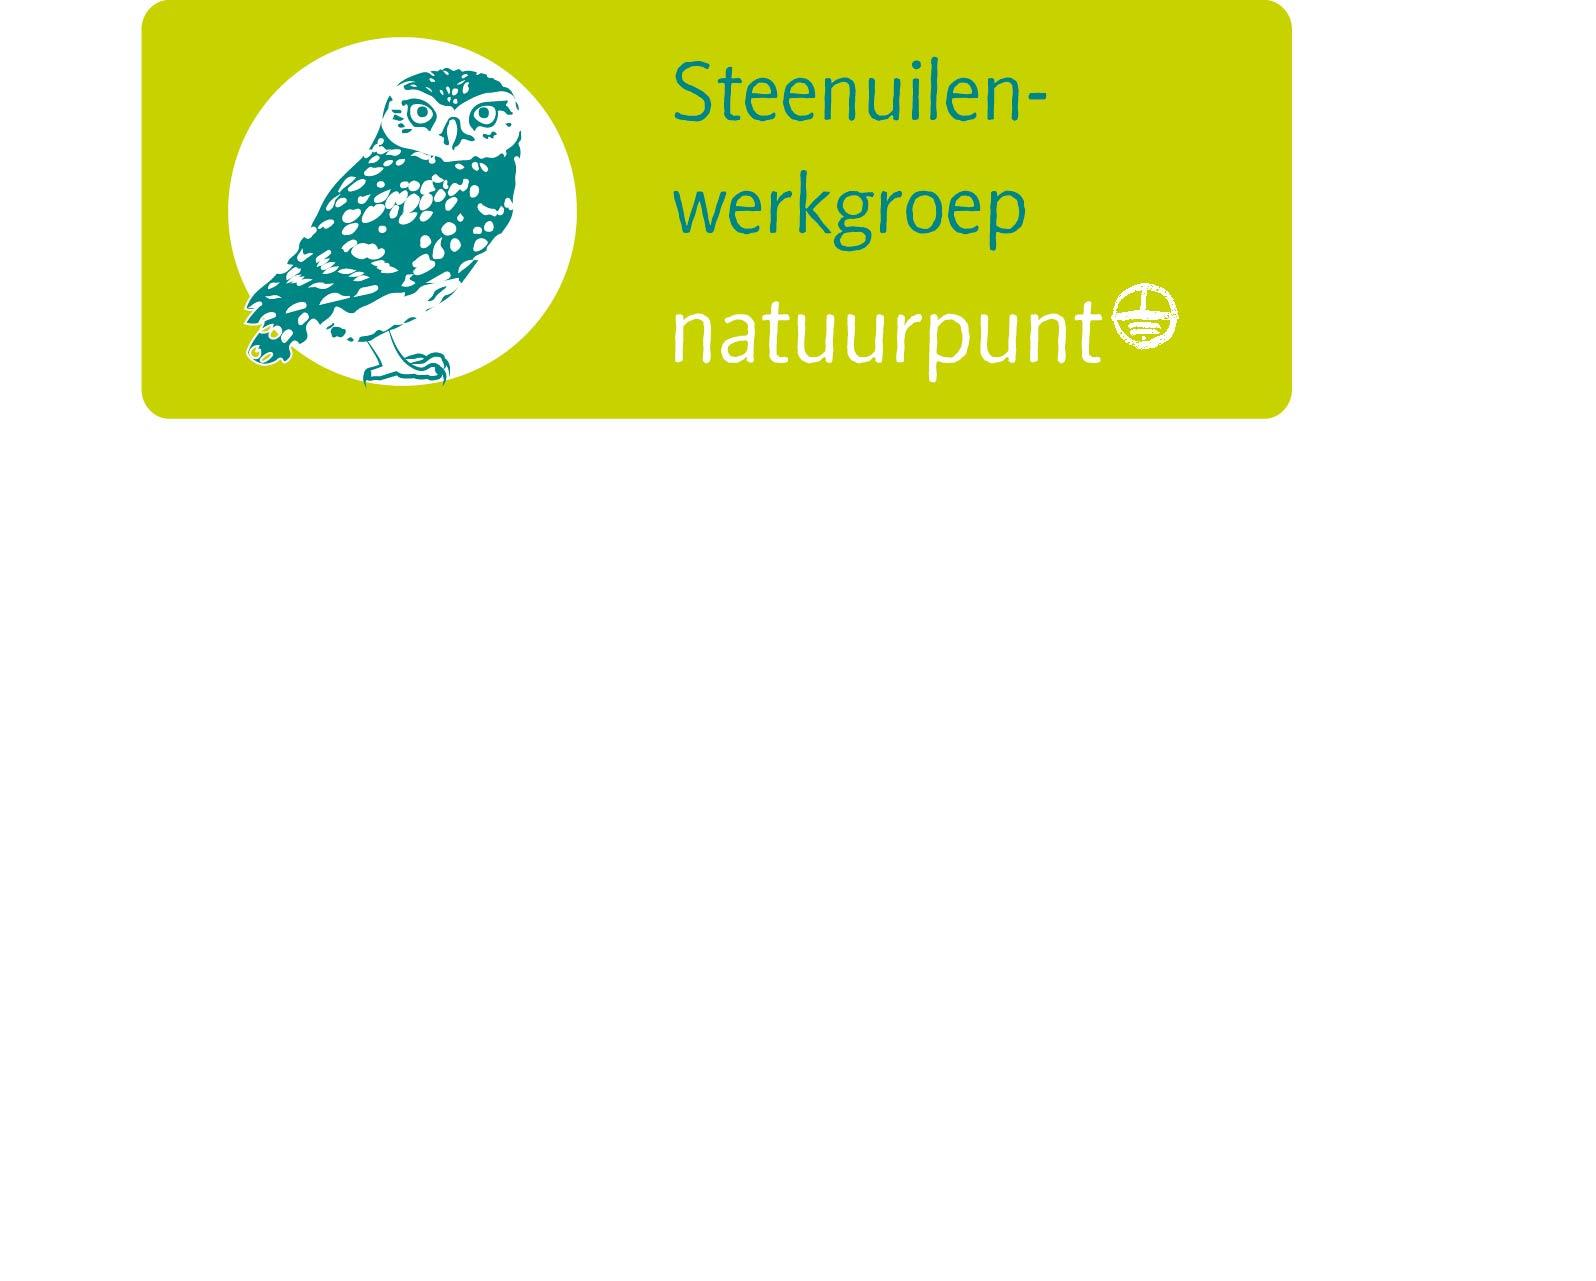 Nieuwsbrief van de Steenuilenwerkgroep van Natuurpunt Nummer 10 - maart 2015 Het zesde Steenuil symposium komt heel dichtbij! Bekijk het indrukwekkende programma. Inschrijven kan nog tot 5 maart.